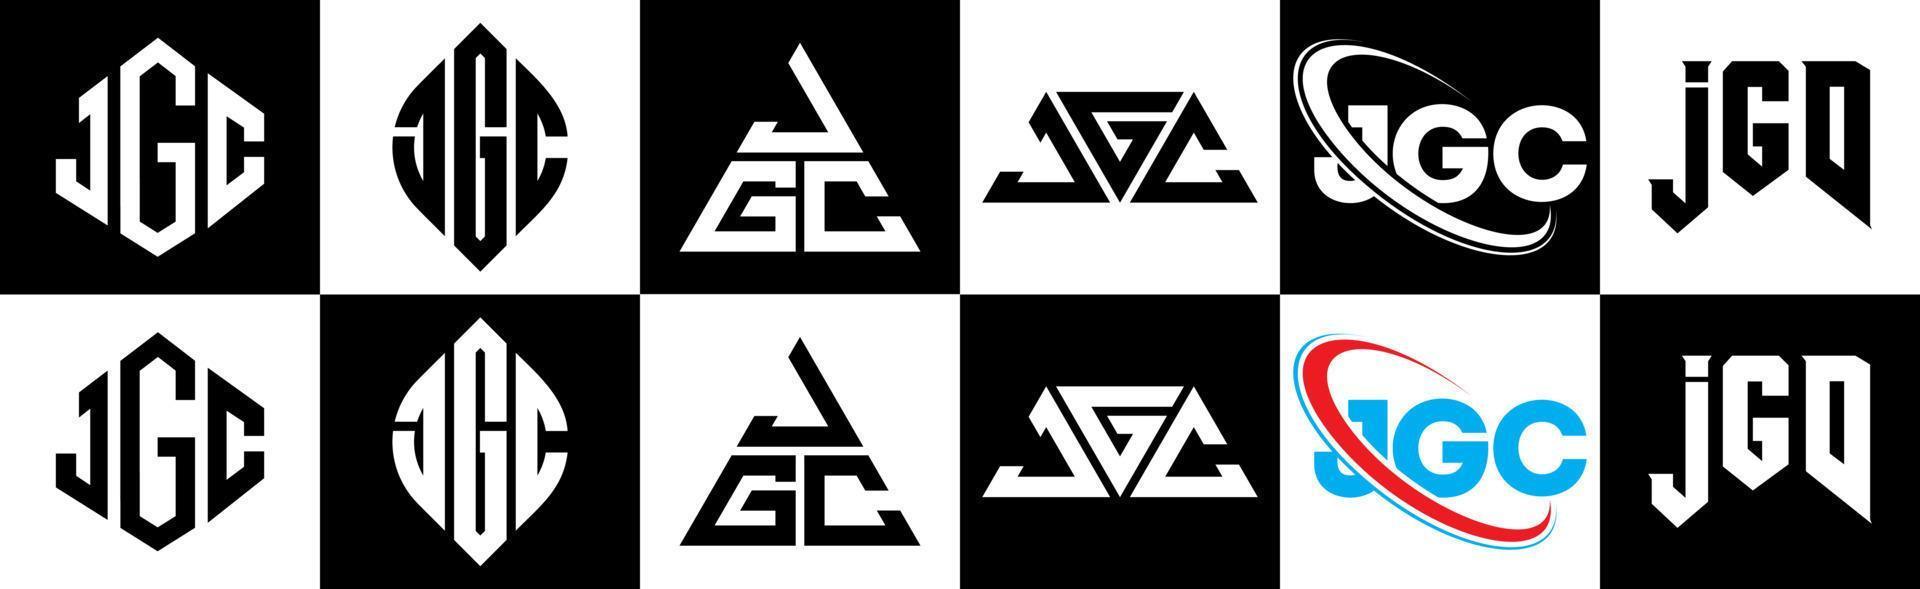 jgc-Buchstaben-Logo-Design in sechs Stilen. jgc Polygon, Kreis, Dreieck, Sechseck, flacher und einfacher Stil mit schwarz-weißem Buchstabenlogo in einer Zeichenfläche. JGC minimalistisches und klassisches Logo vektor